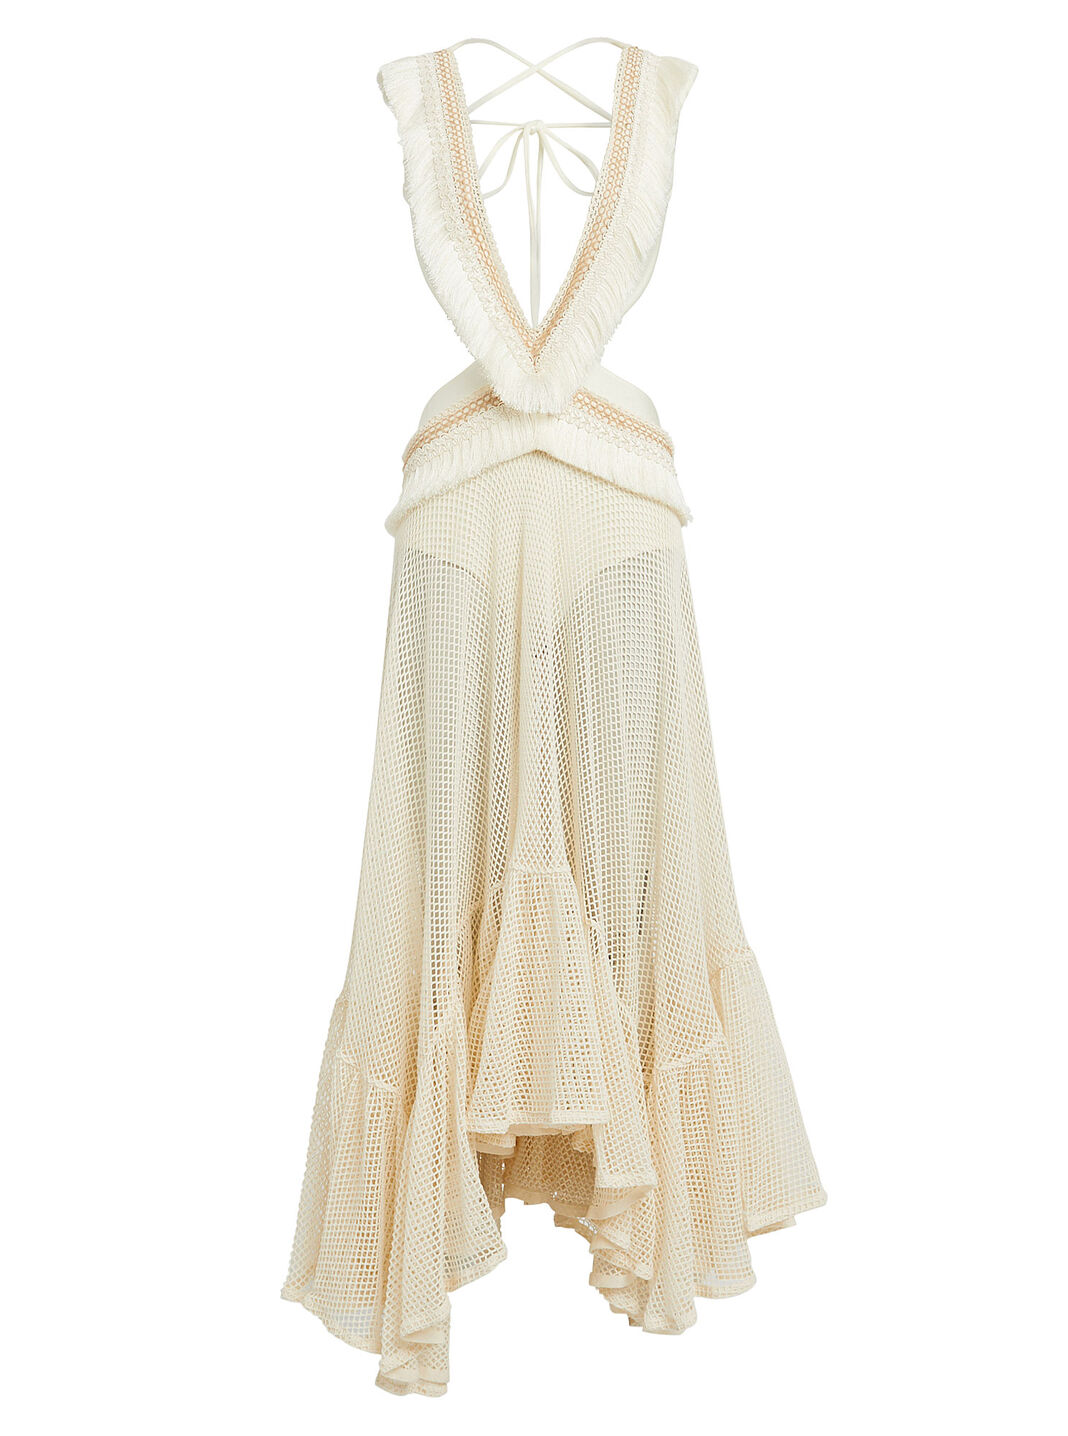 Patbo Draped Fringe Maxi Dress in White - Size L